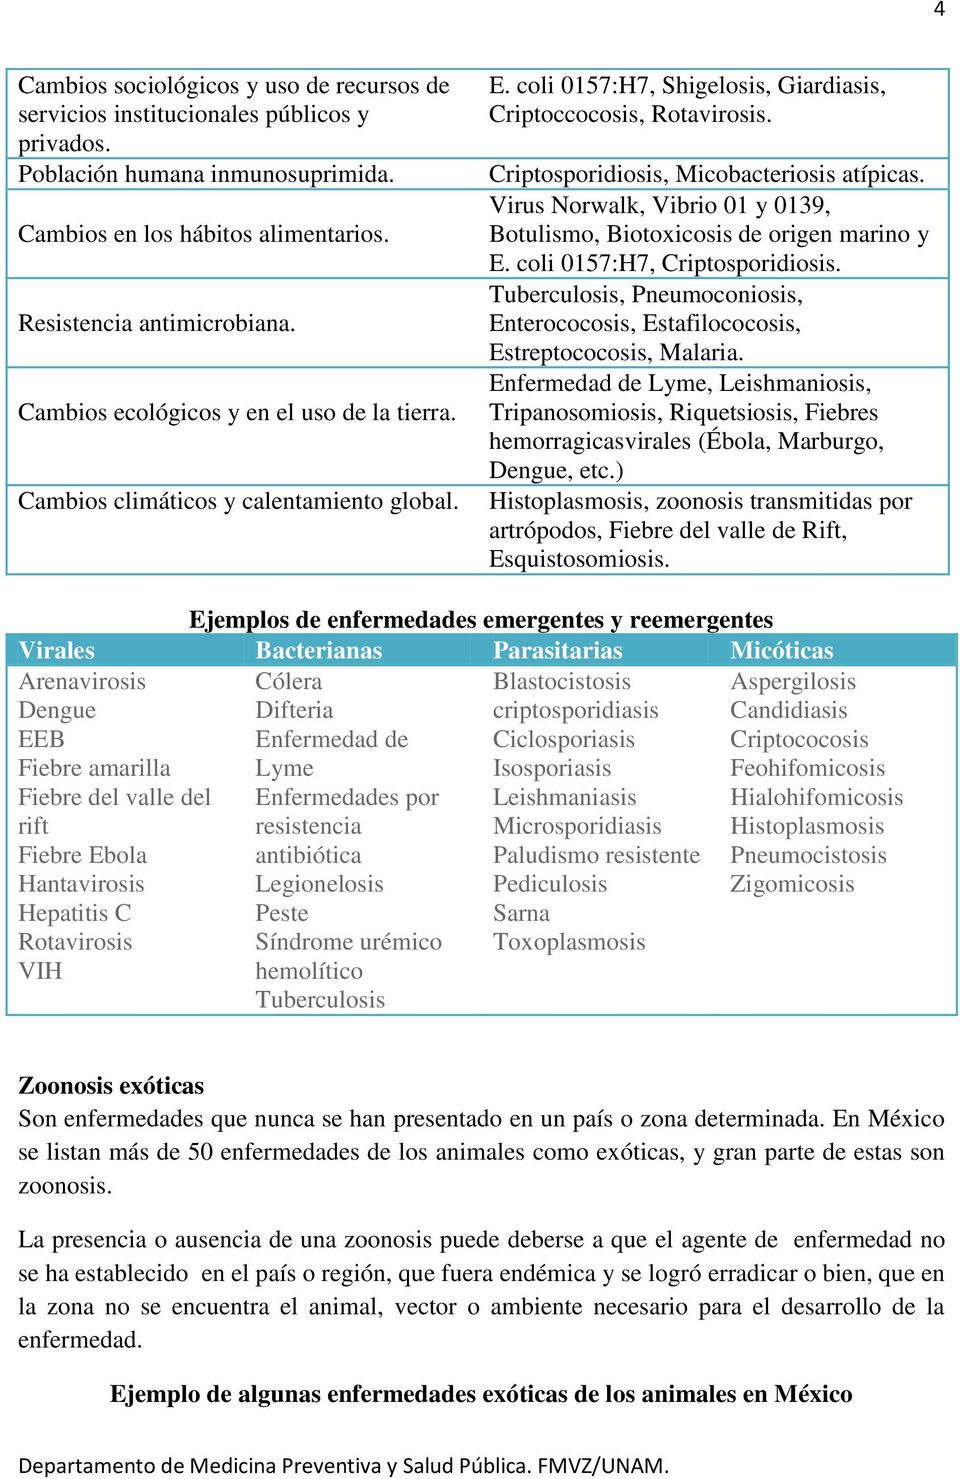 Criptosporidiosis, Micobacteriosis atípicas. Virus Norwalk, Vibrio 01 y 0139, Botulismo, Biotoxicosis de origen marino y E. coli 0157:H7, Criptosporidiosis.